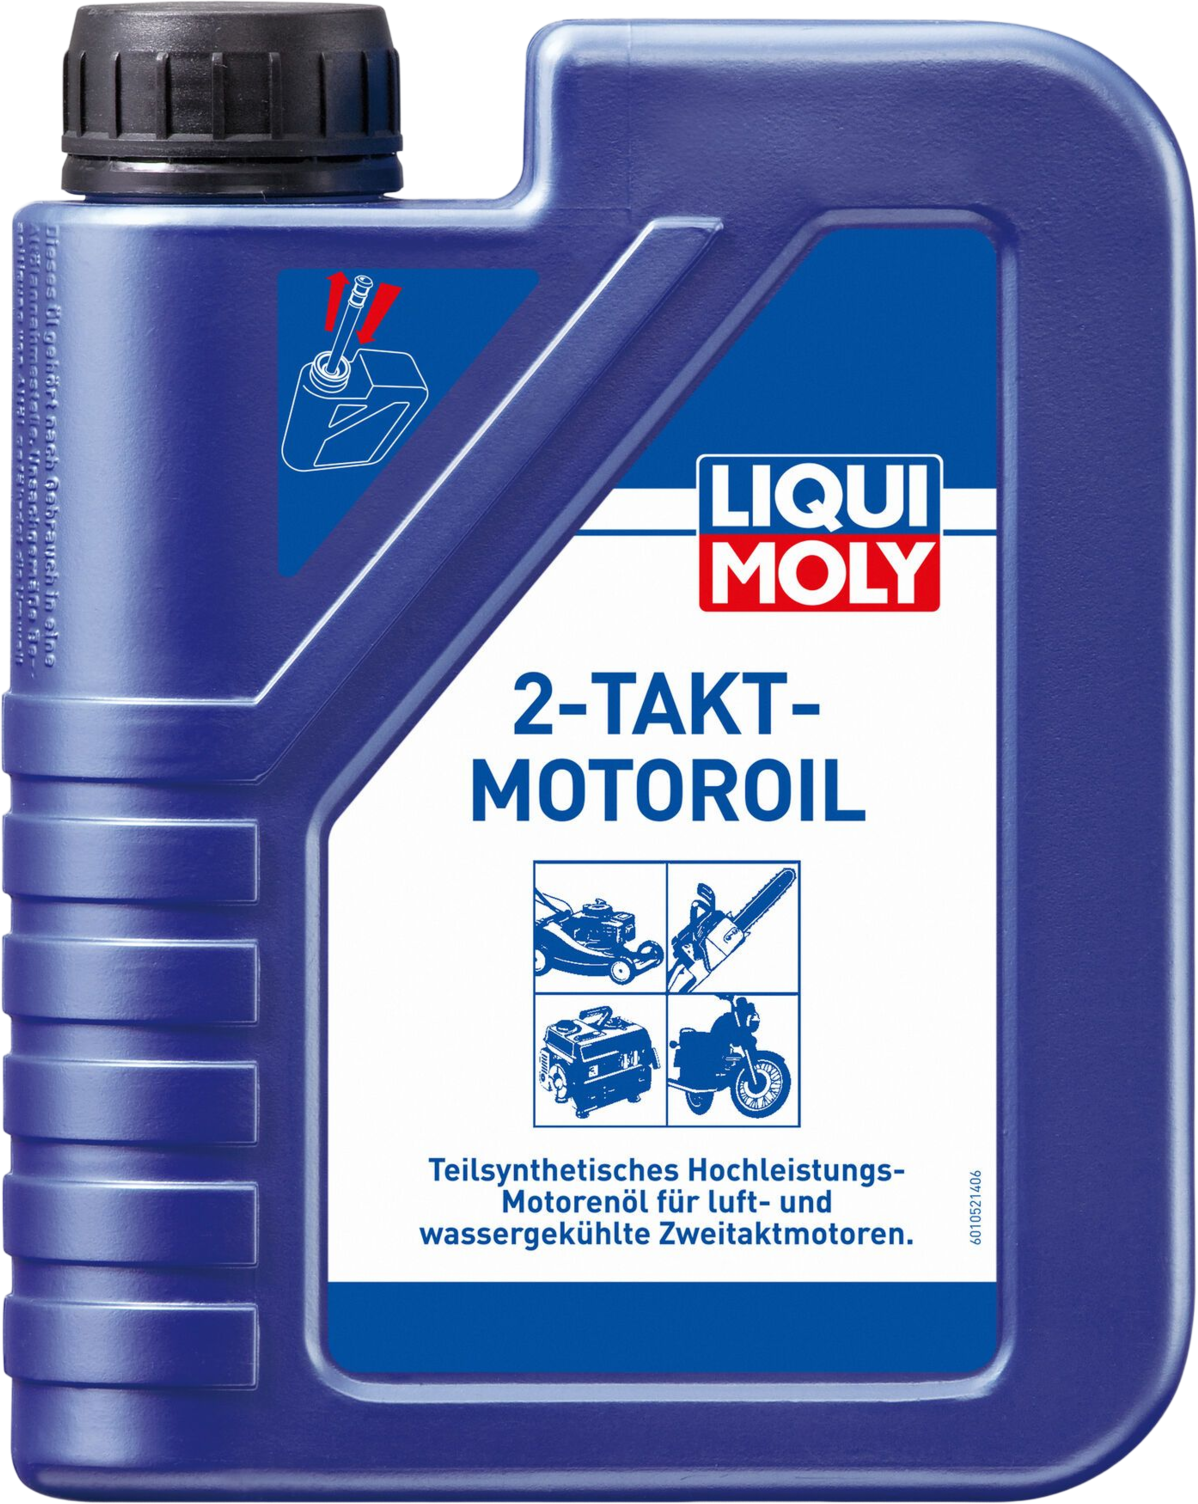 LM1052-1 Voor gescheiden en gemengde smering in motorfietsen, bromfietsen, grasmaaiers, motorzagen en noodstroomaggregaten.